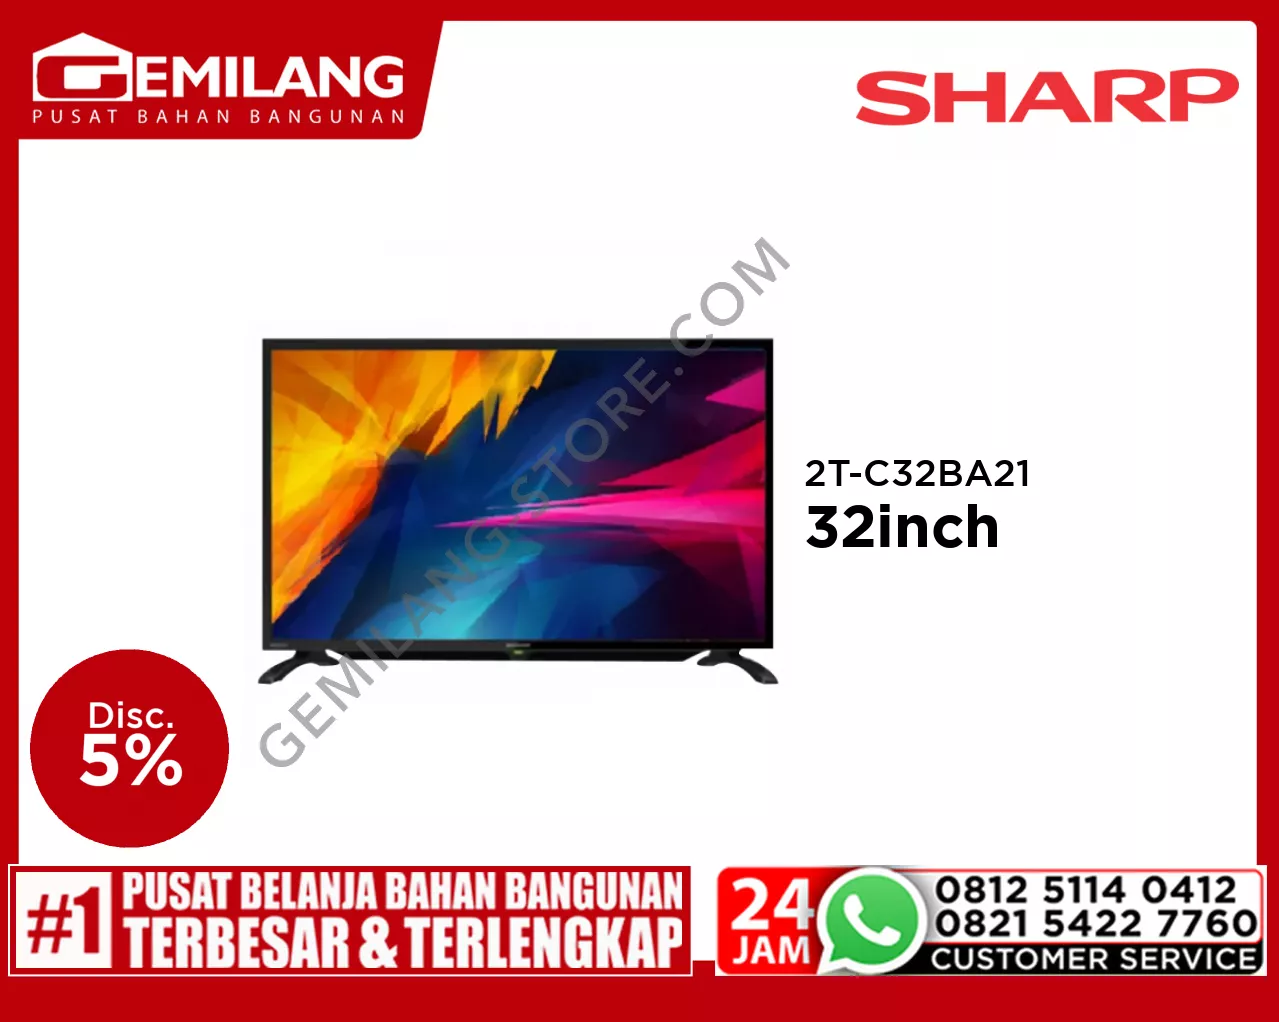 SHARP TV 2T-C32BA21 32inch